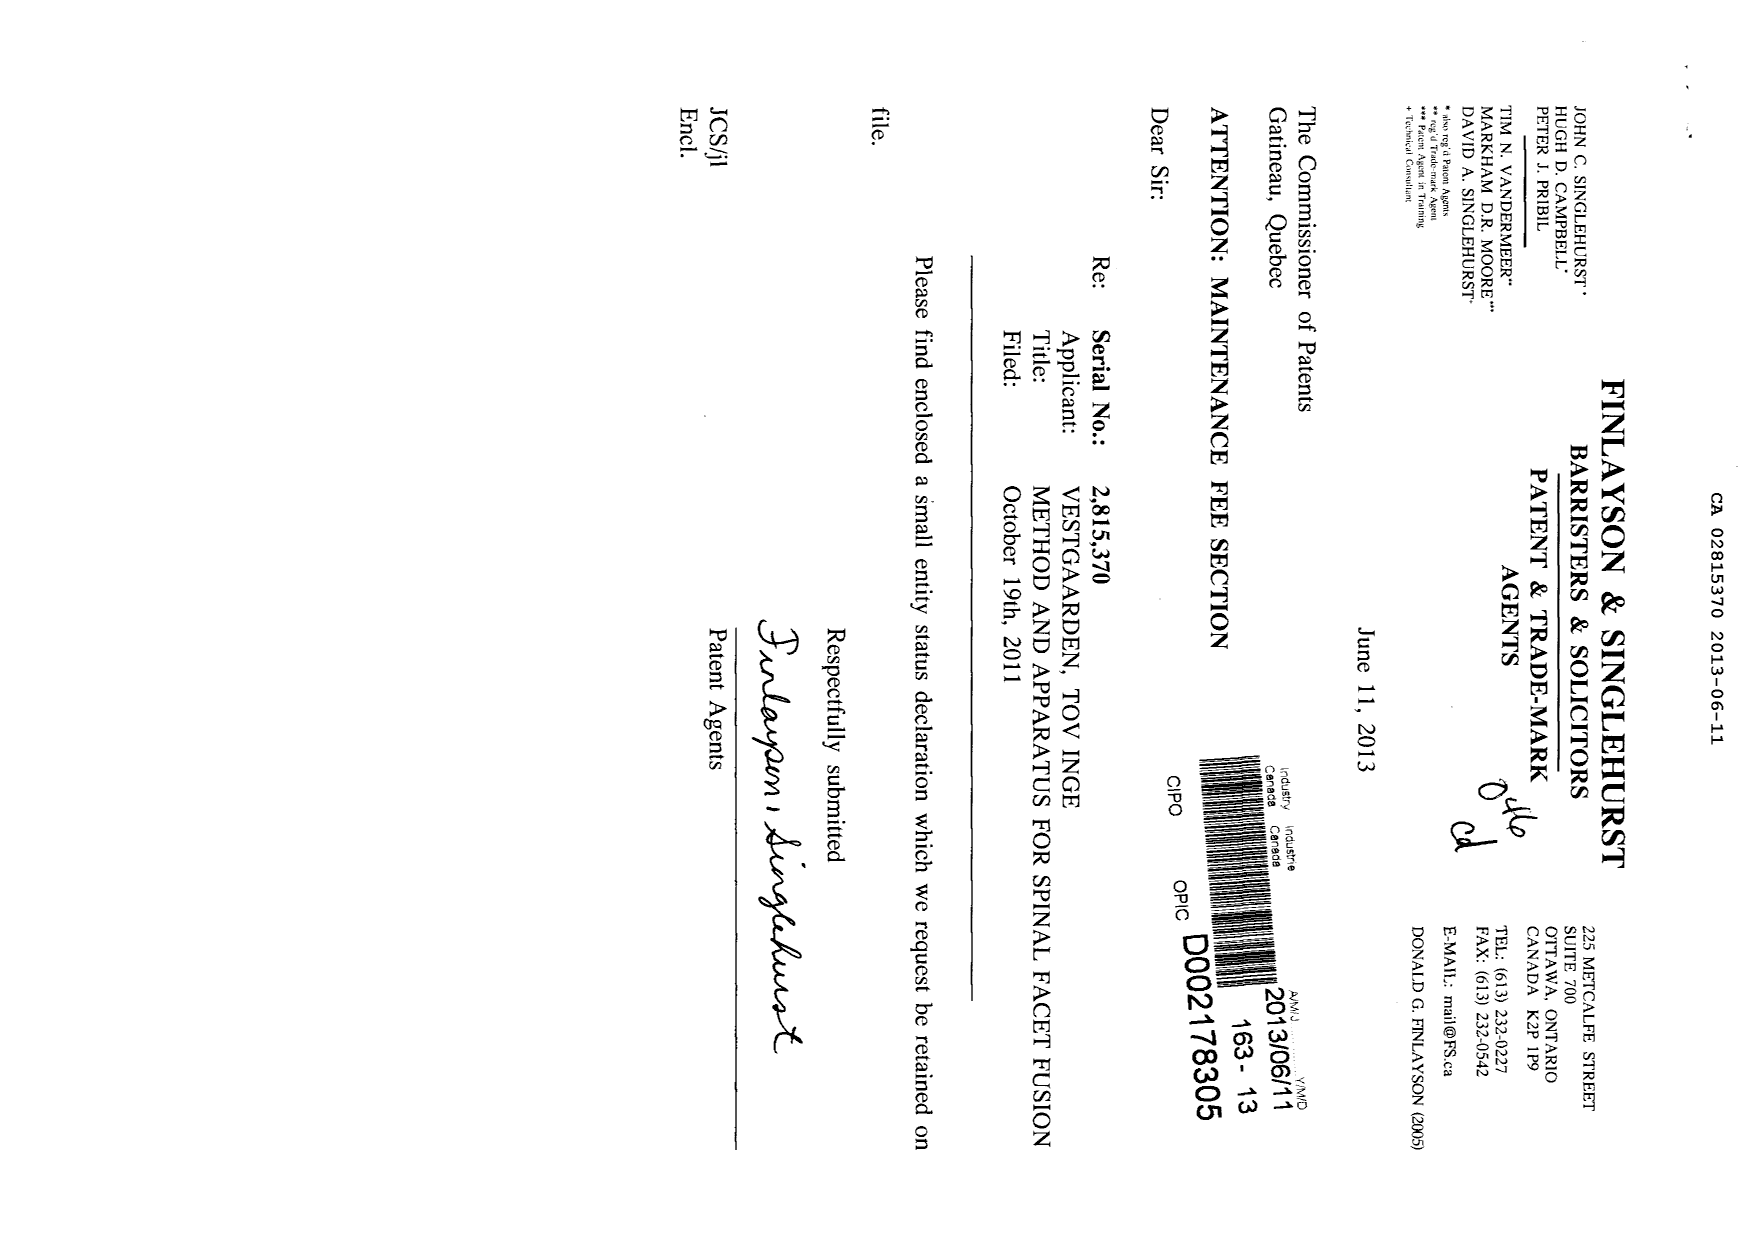 Document de brevet canadien 2815370. Correspondance 20130611. Image 1 de 2